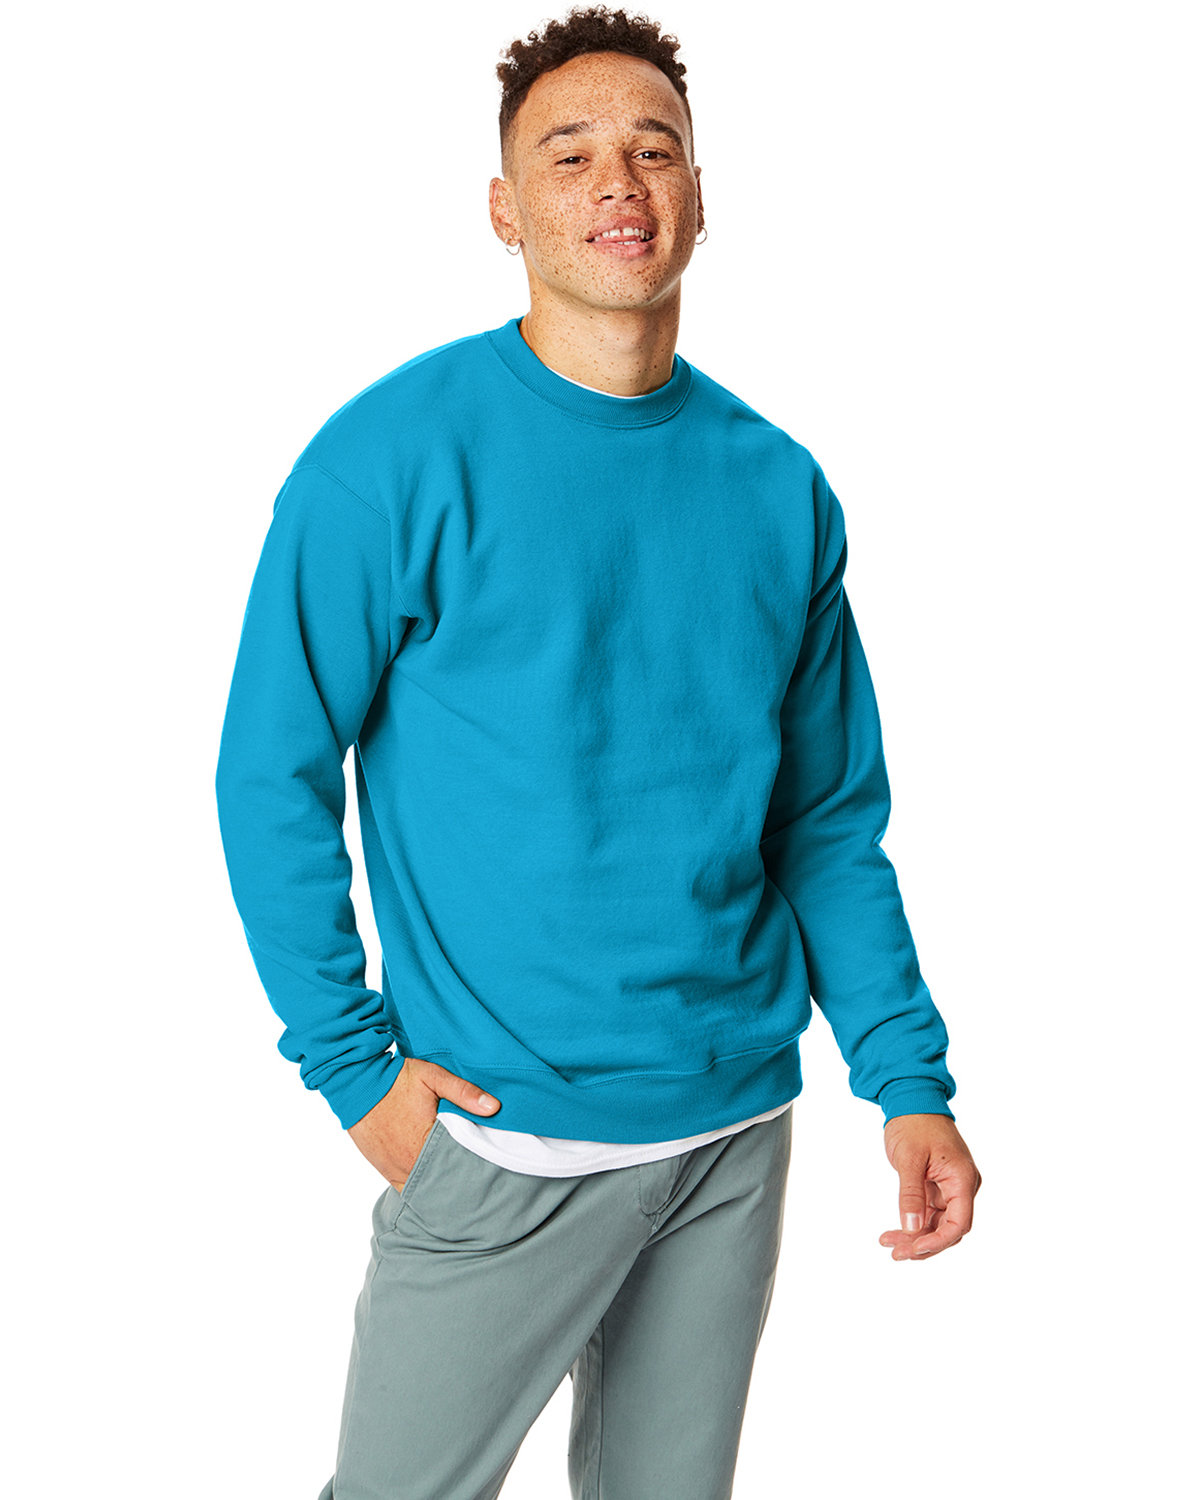 Men's Hanes Ecosmart Fleece Pullover Hoodie, Size: Small, LT Brown